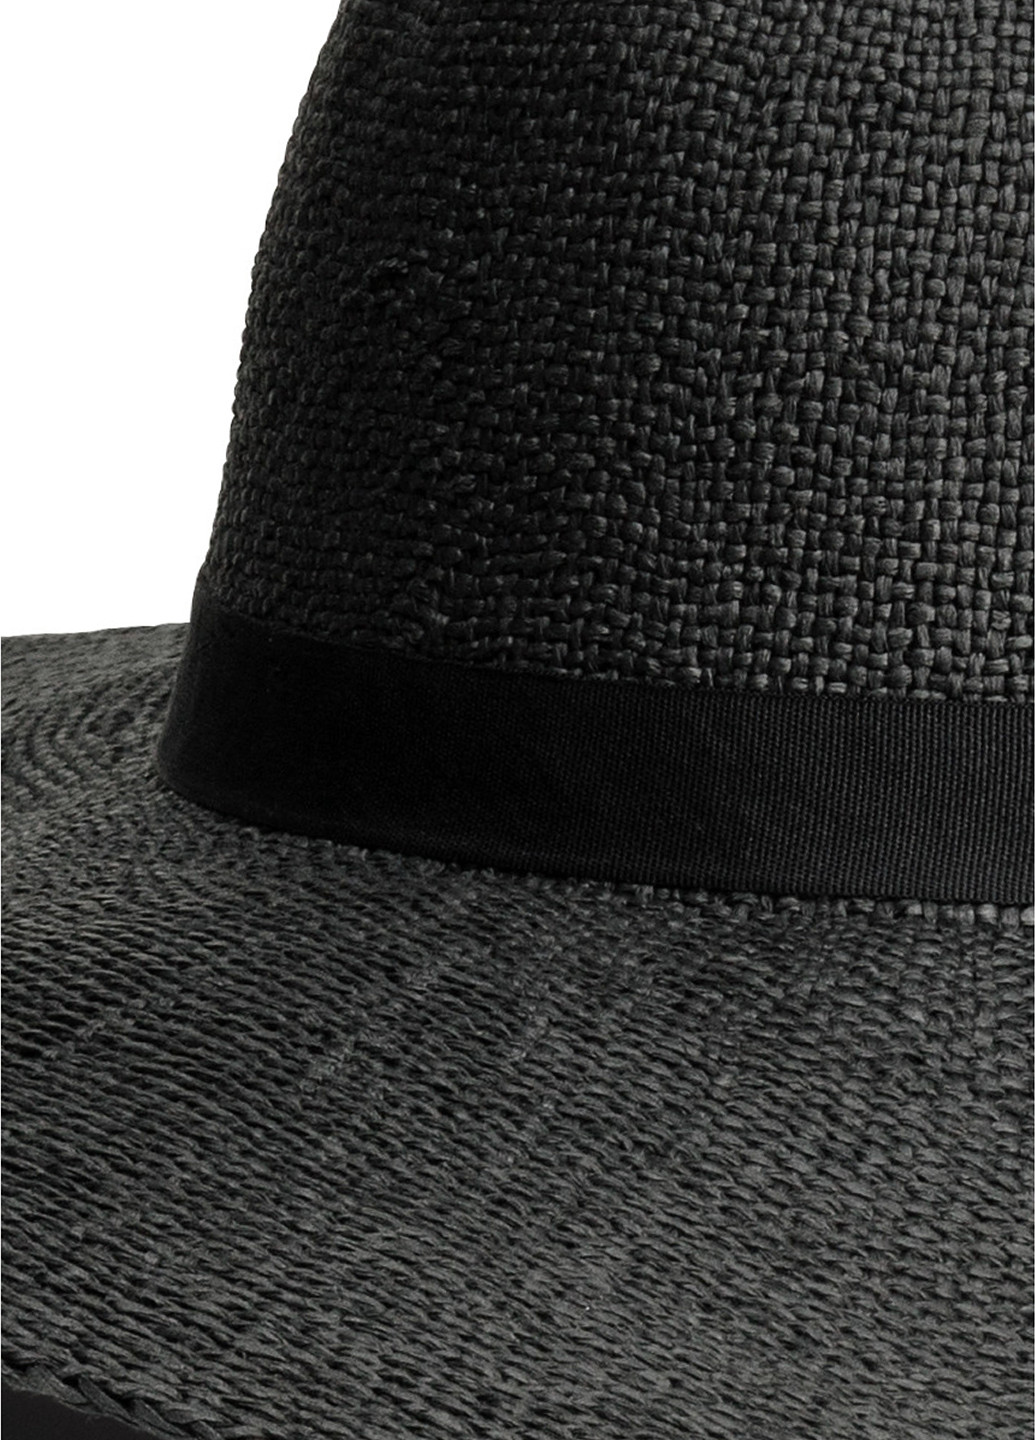 Шляпа H&M широкополая однотонная тёмно-серая кэжуал искусственная солома